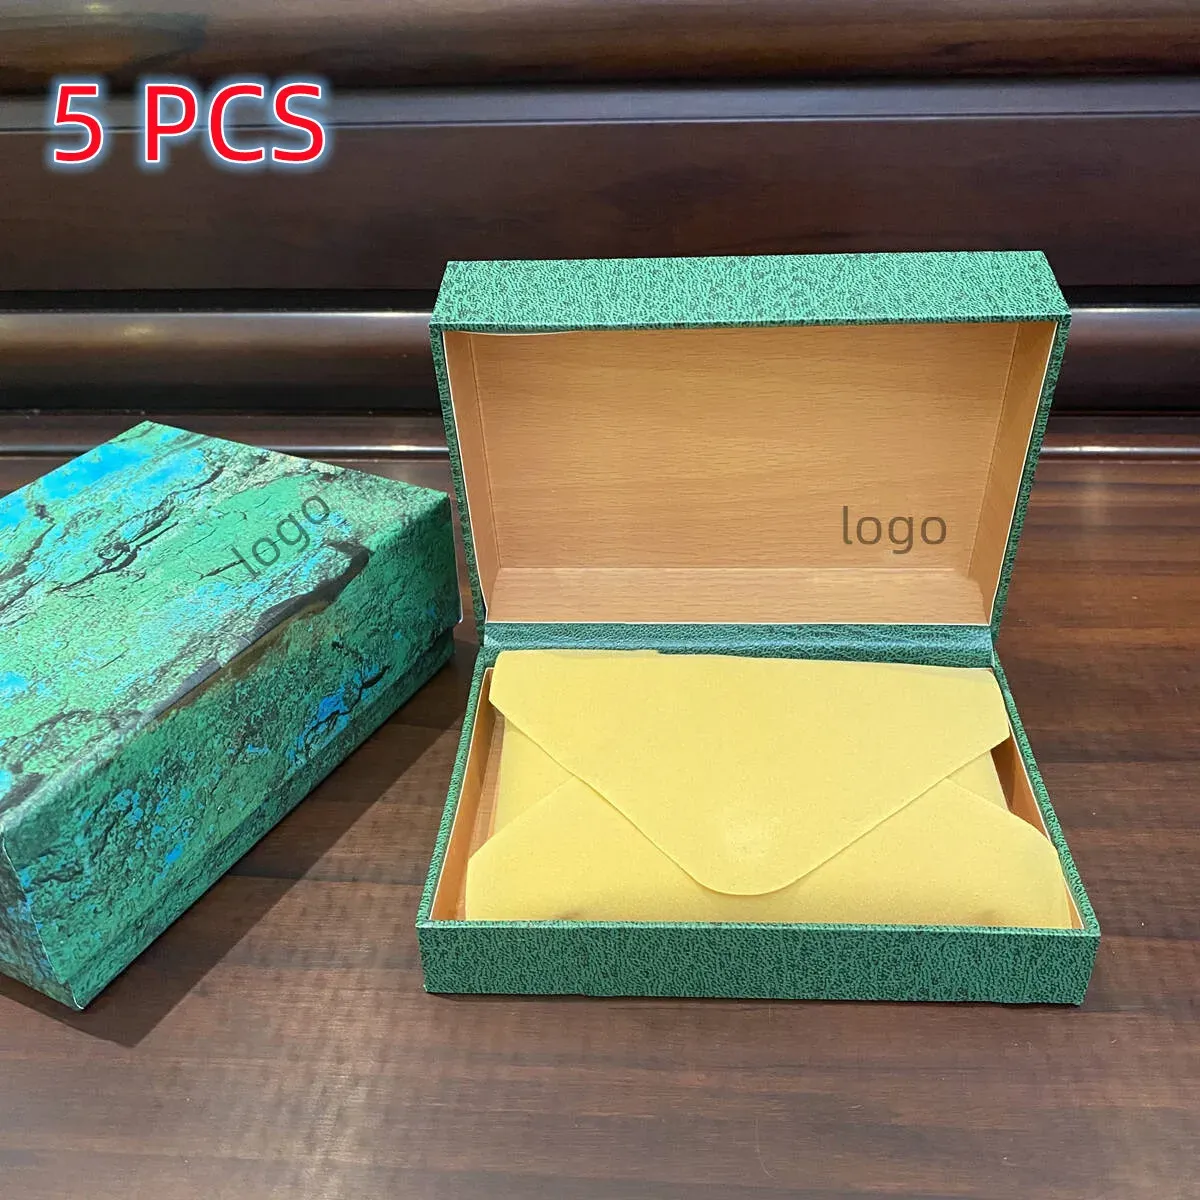 Cajas de reloj verde superior, cajas de reloj de madera compuesta de calidad, caja de embalaje de reloj con folleto en inglés